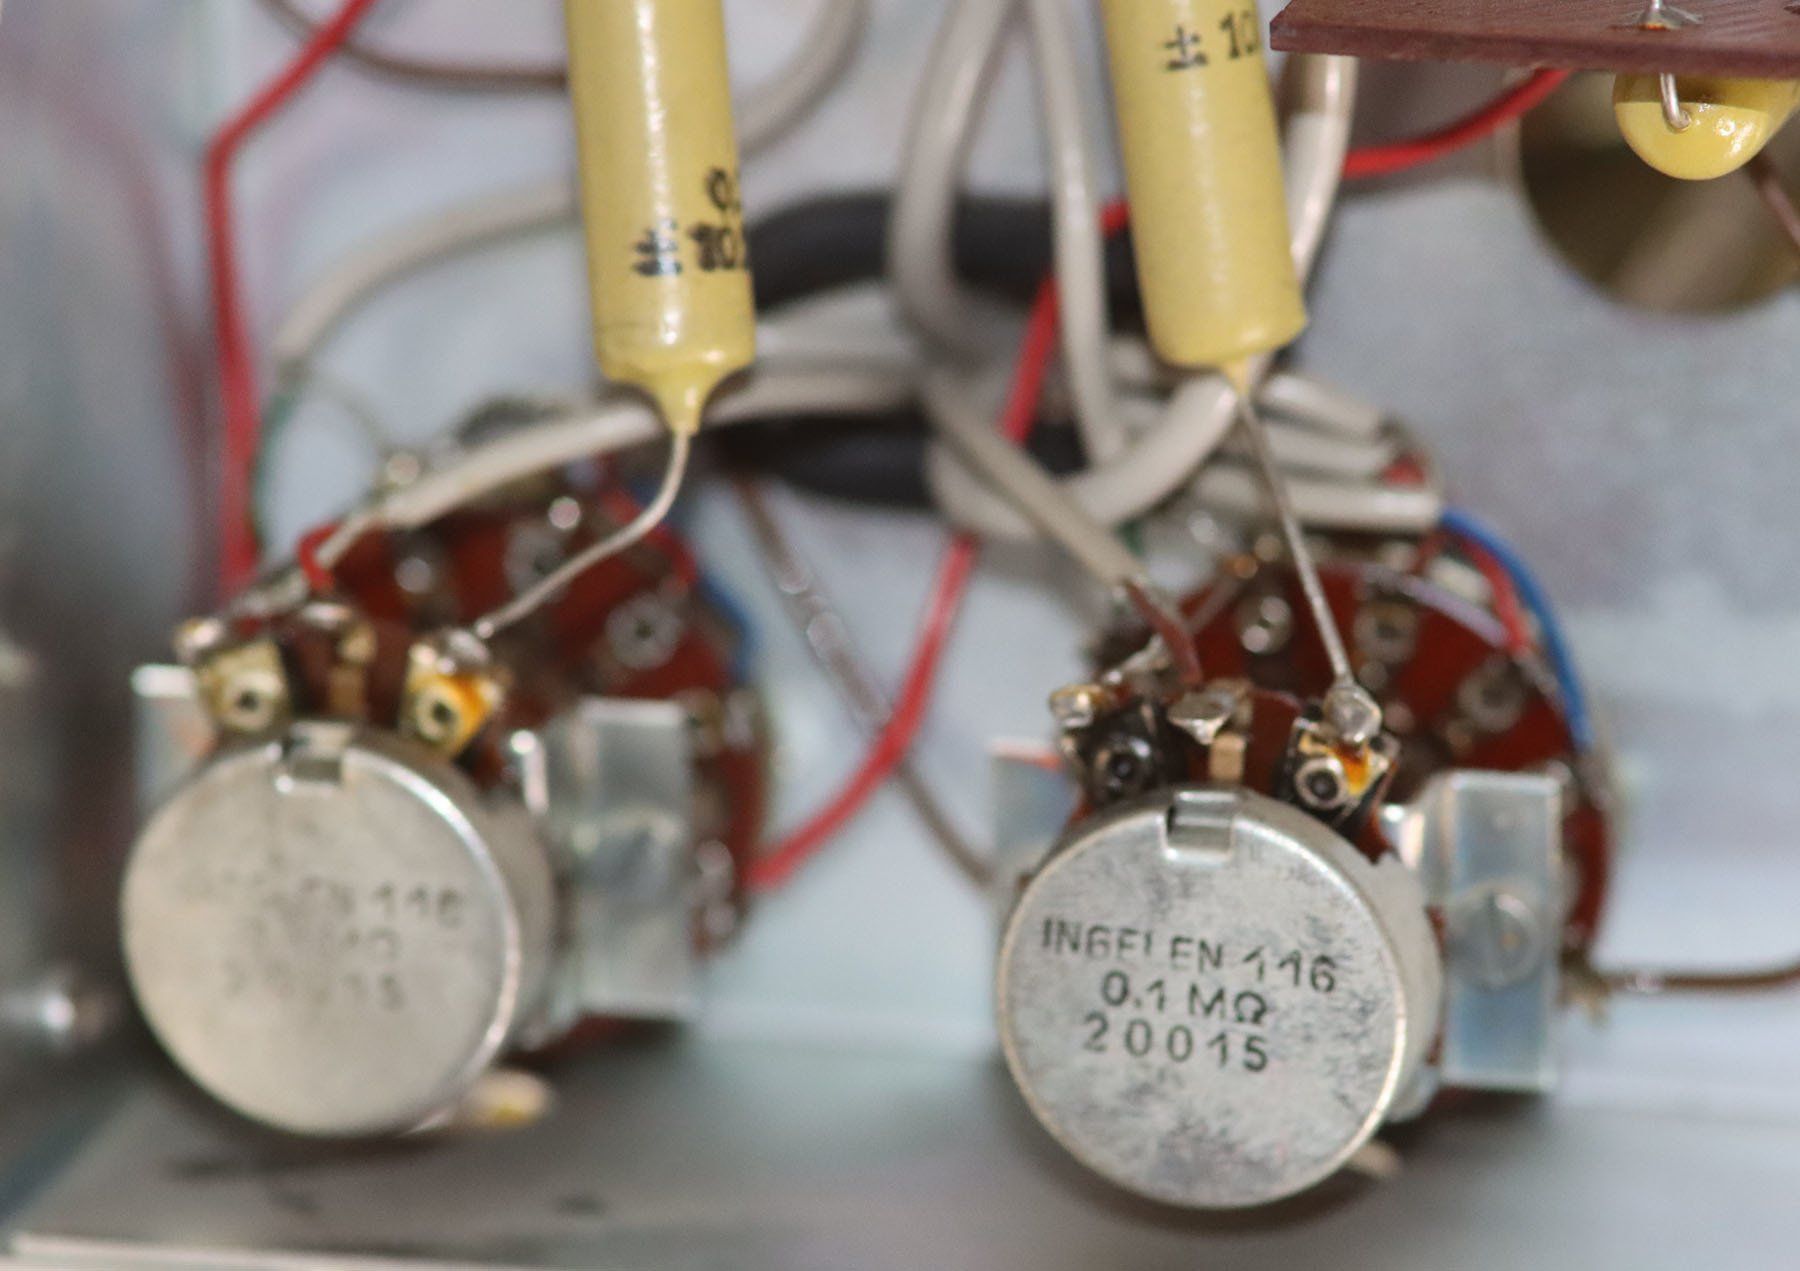 Revox G36 potentiometers and rotary switches